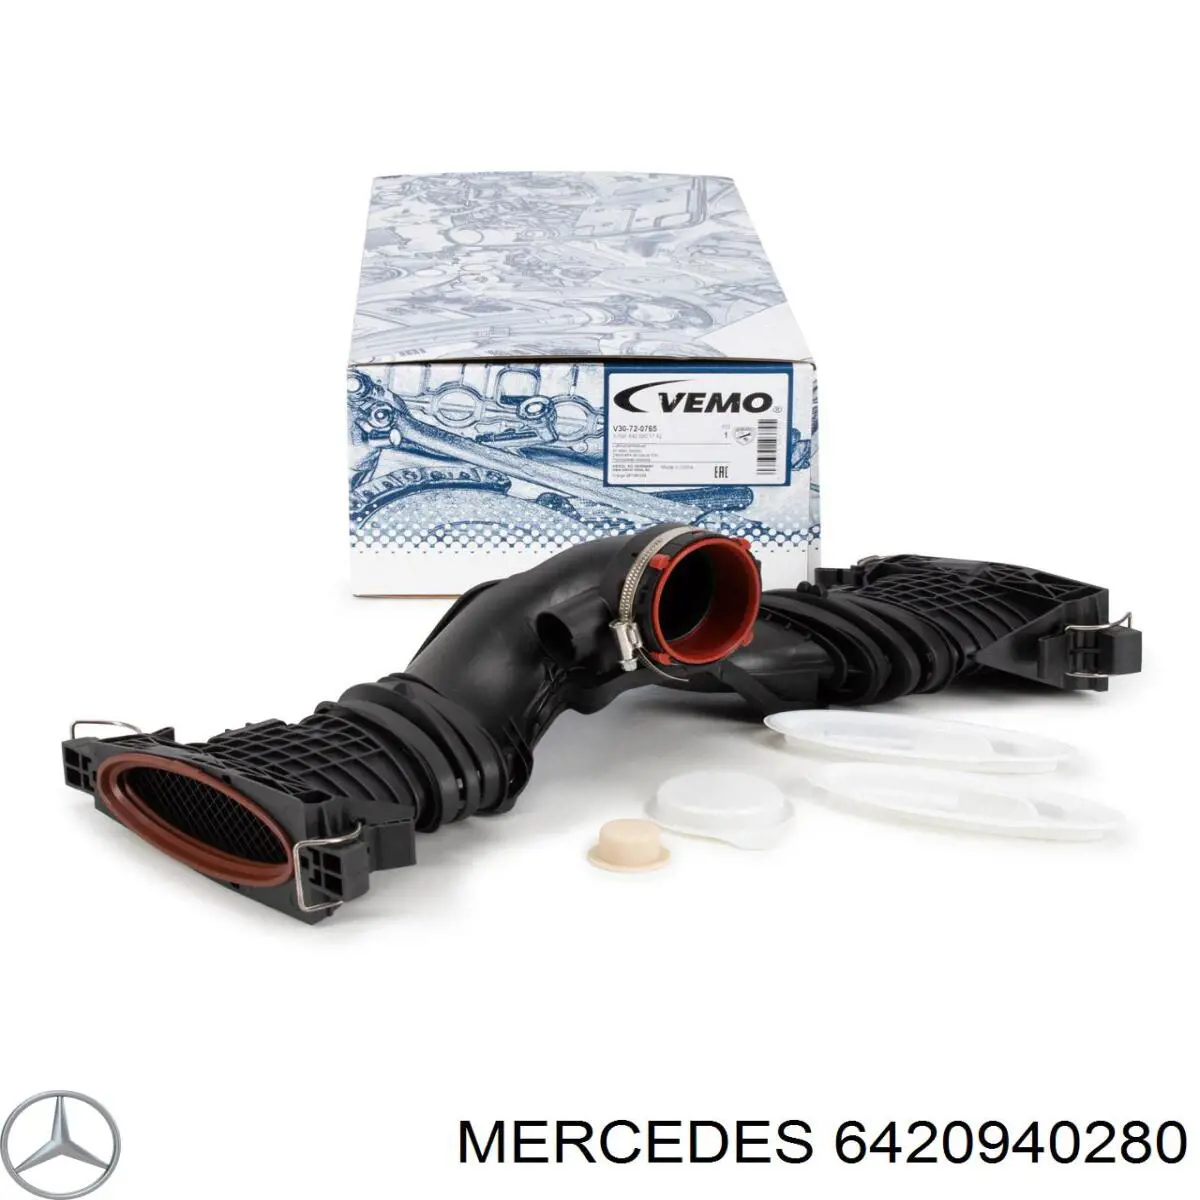 6420940280 Mercedes vedante medidor de consumo até o filtro de ar